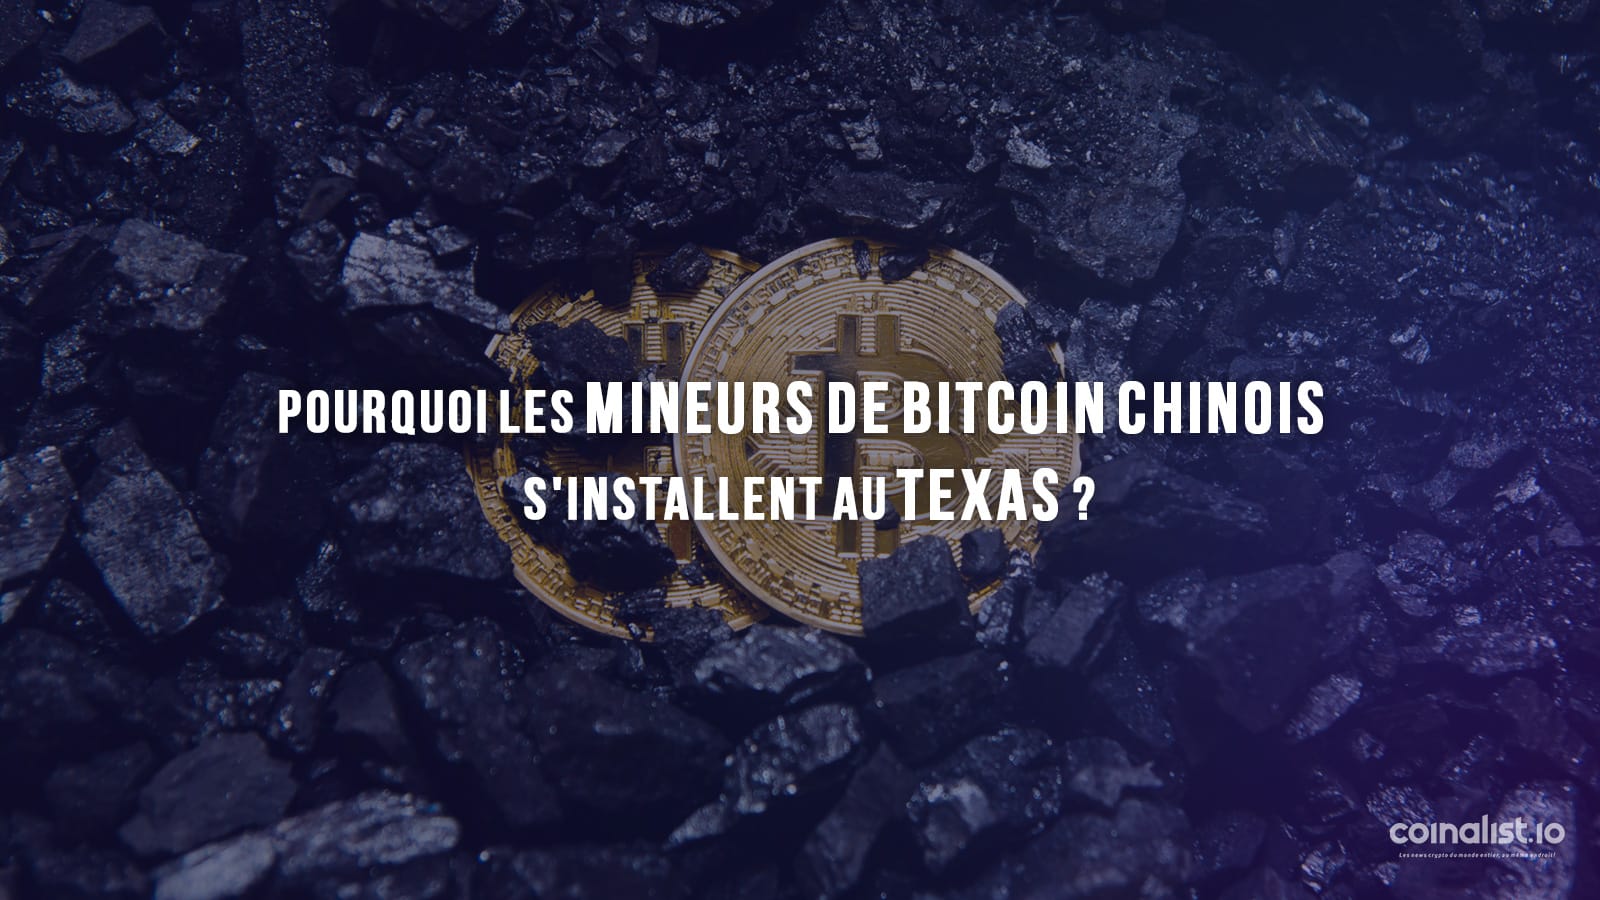 Pourquoi Les Mineurs De Bitcoin Chinois S'Installent Au Texas ? - Extraction De Bitcoins